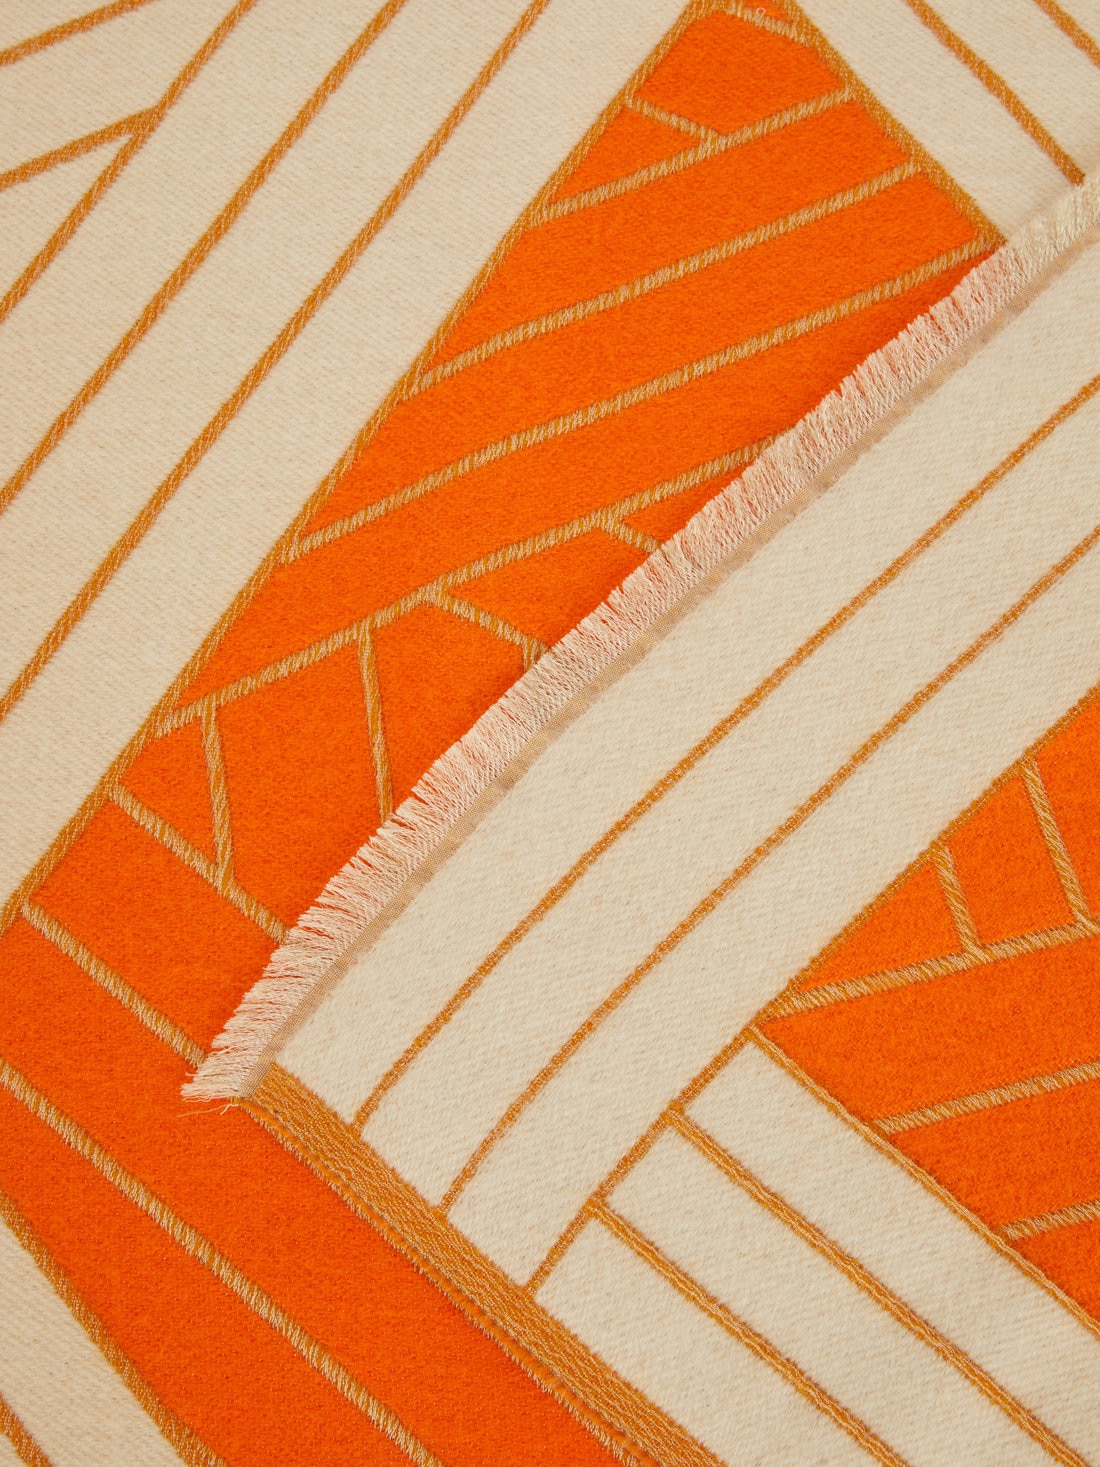 Manta Nastri 135×190 cm en lana, cachemira y seda, Naranja - 8051575836954 - 2